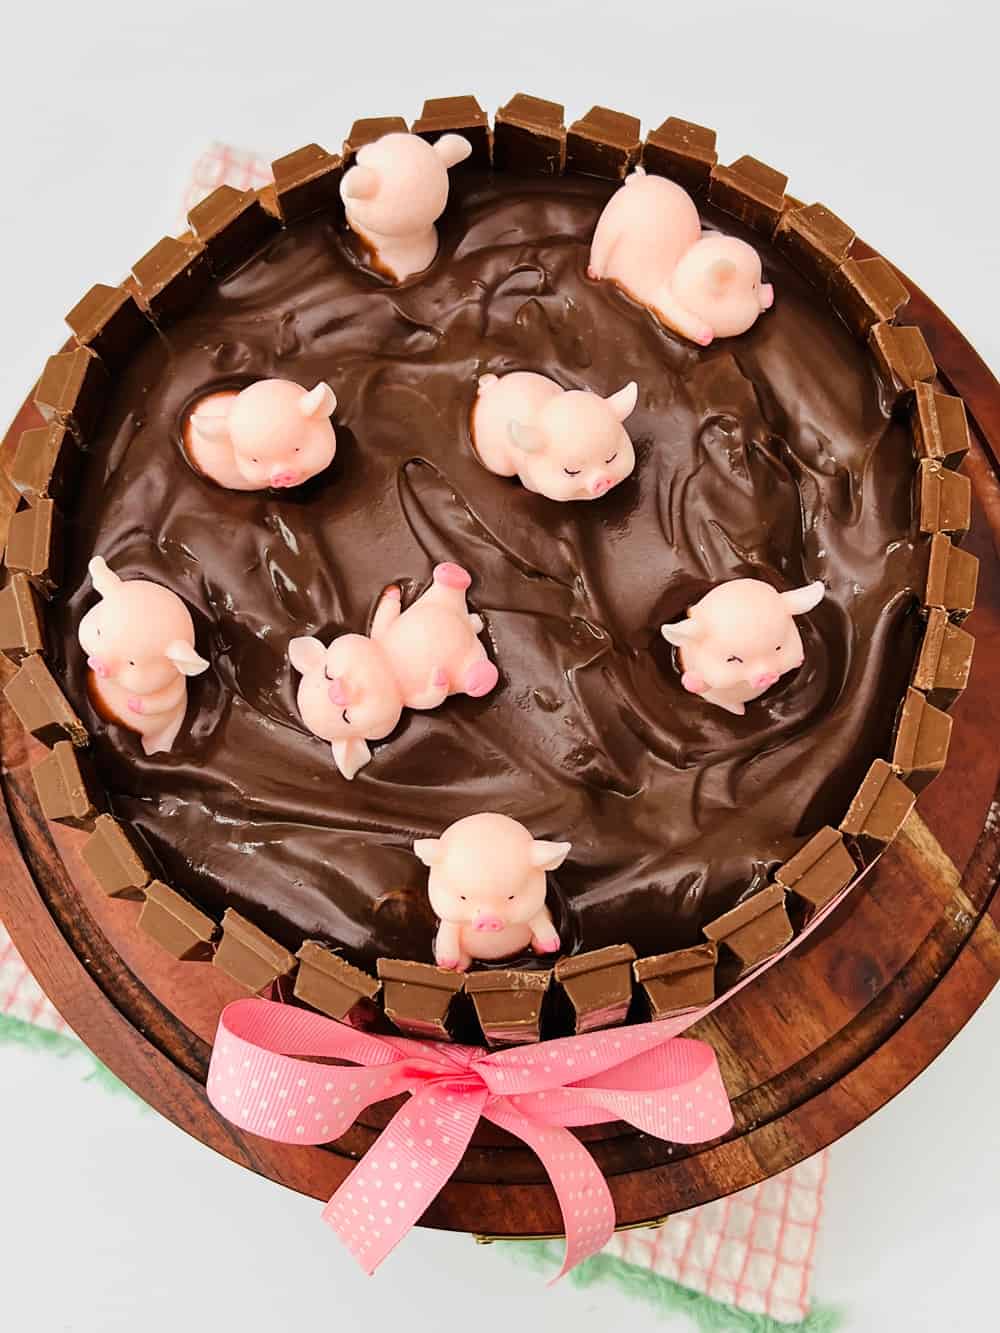 pigs in a mud bath cake